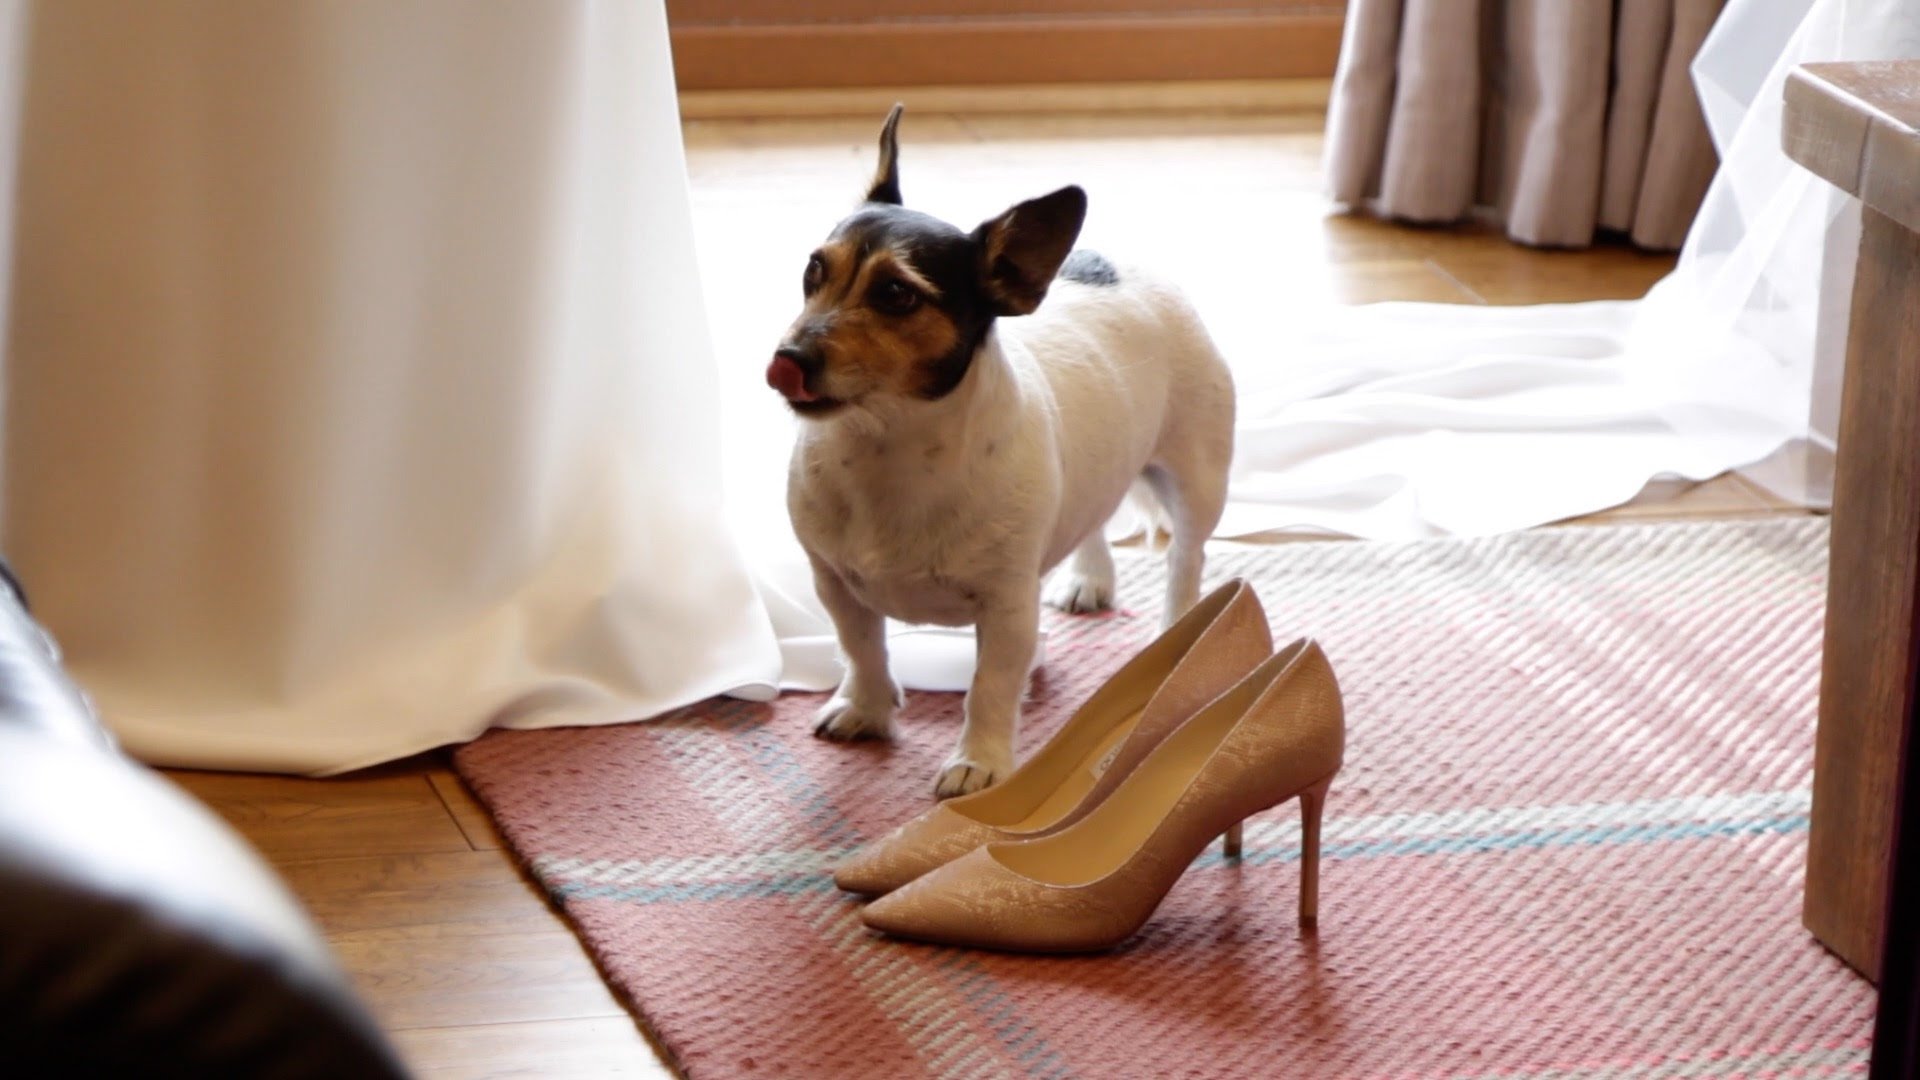 Wedding shoe and dog